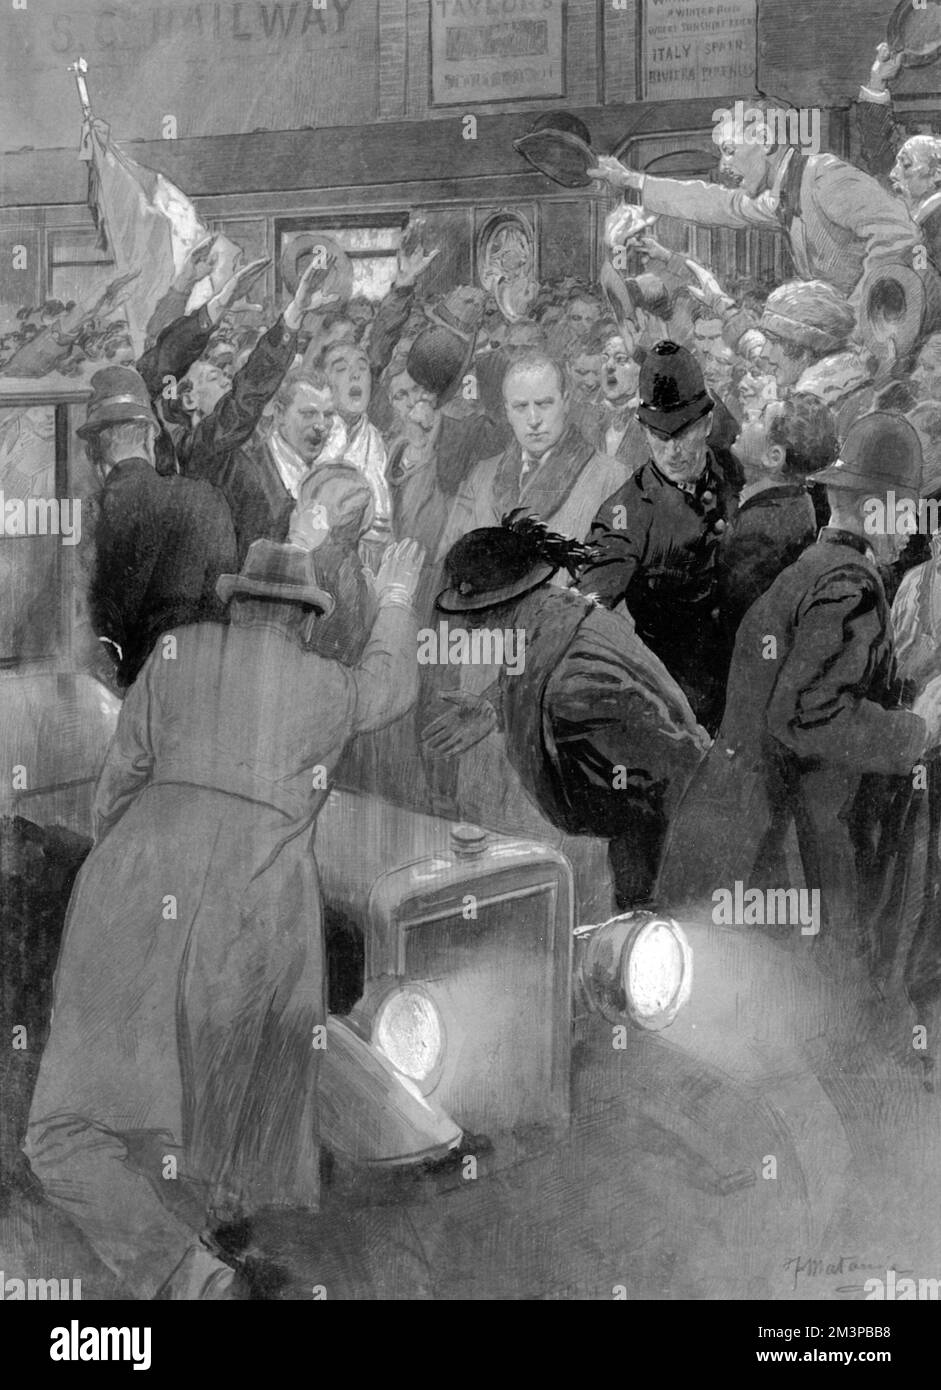 Benito Mussolini, il Premier italiano fascista, arriva a Londra. Data: 1922 Foto Stock